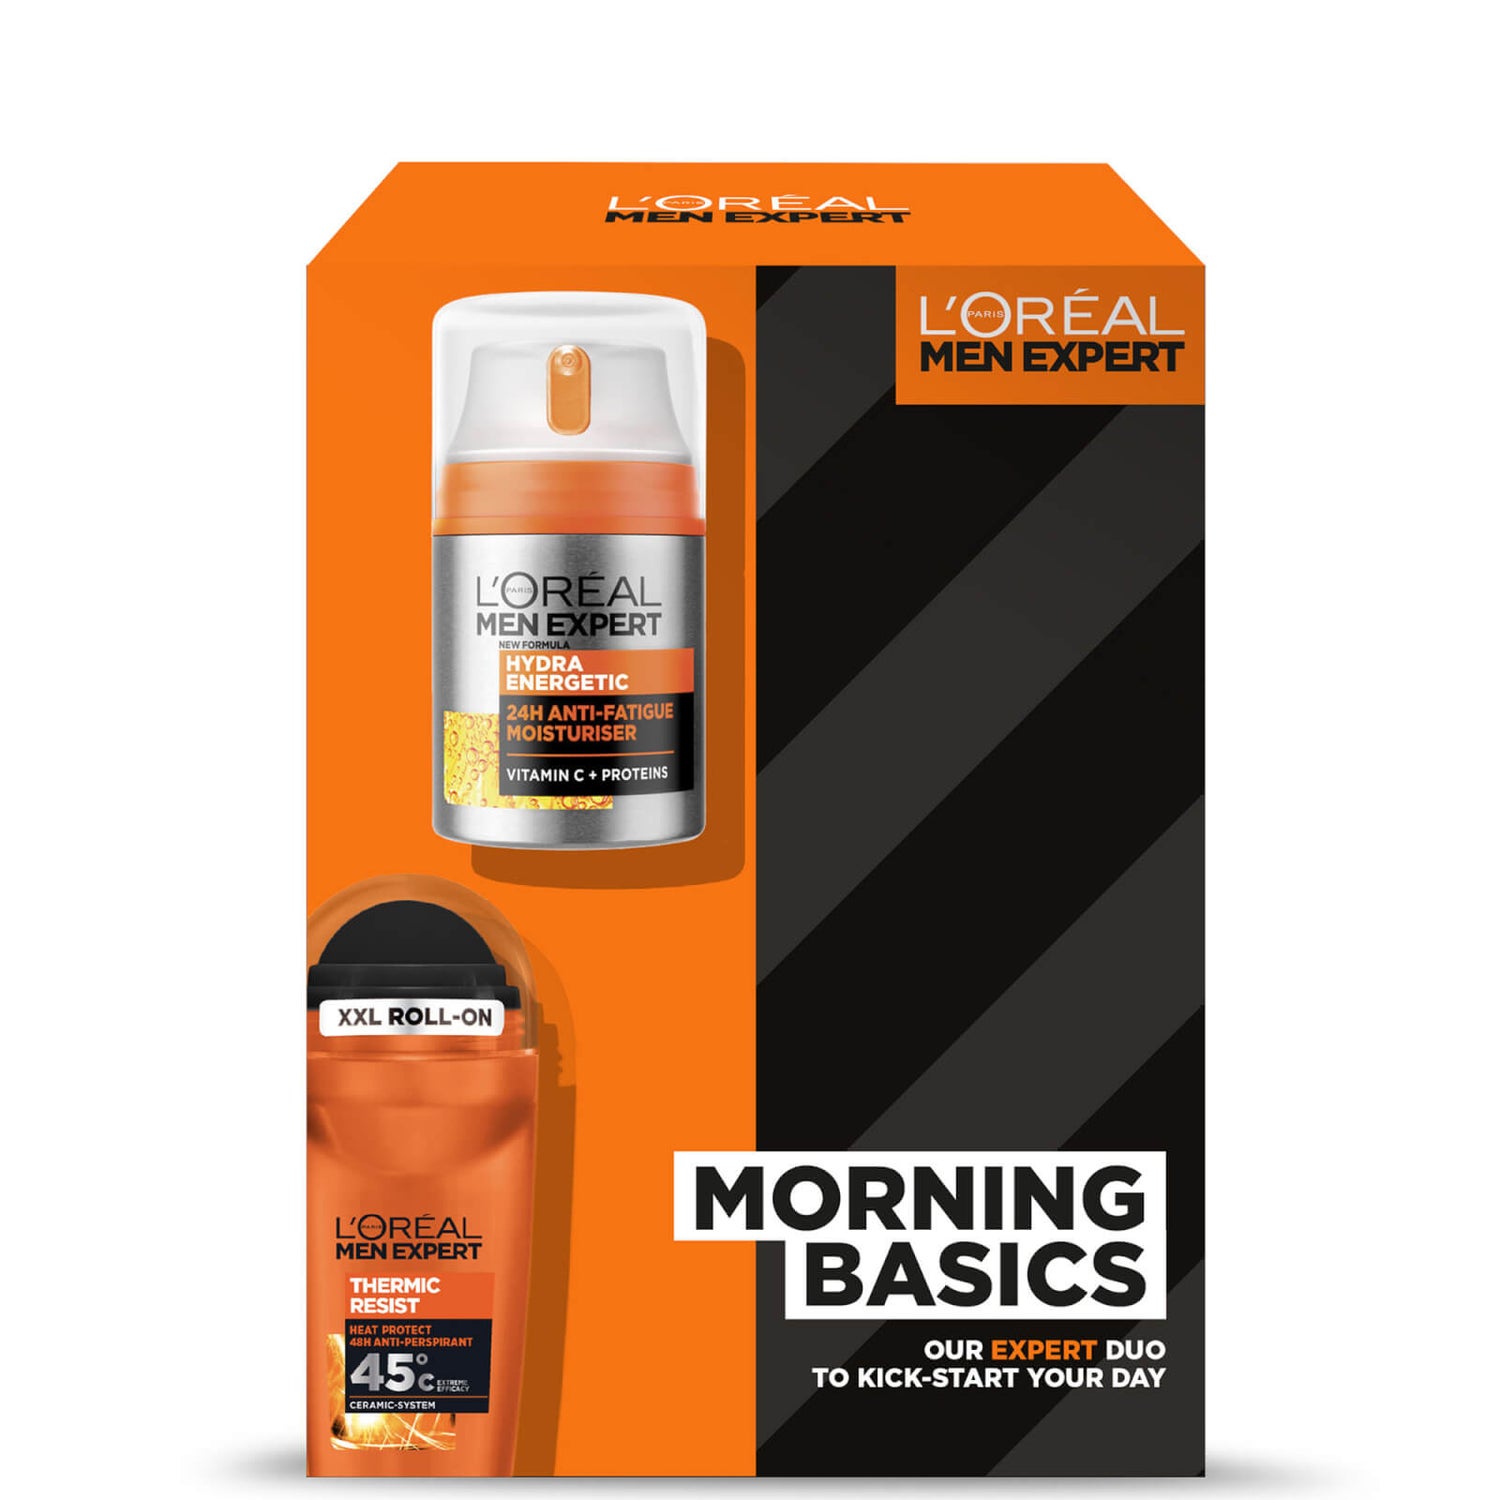 L'Oreal Paris Men Expert Morning Basics Gavepakke til ham